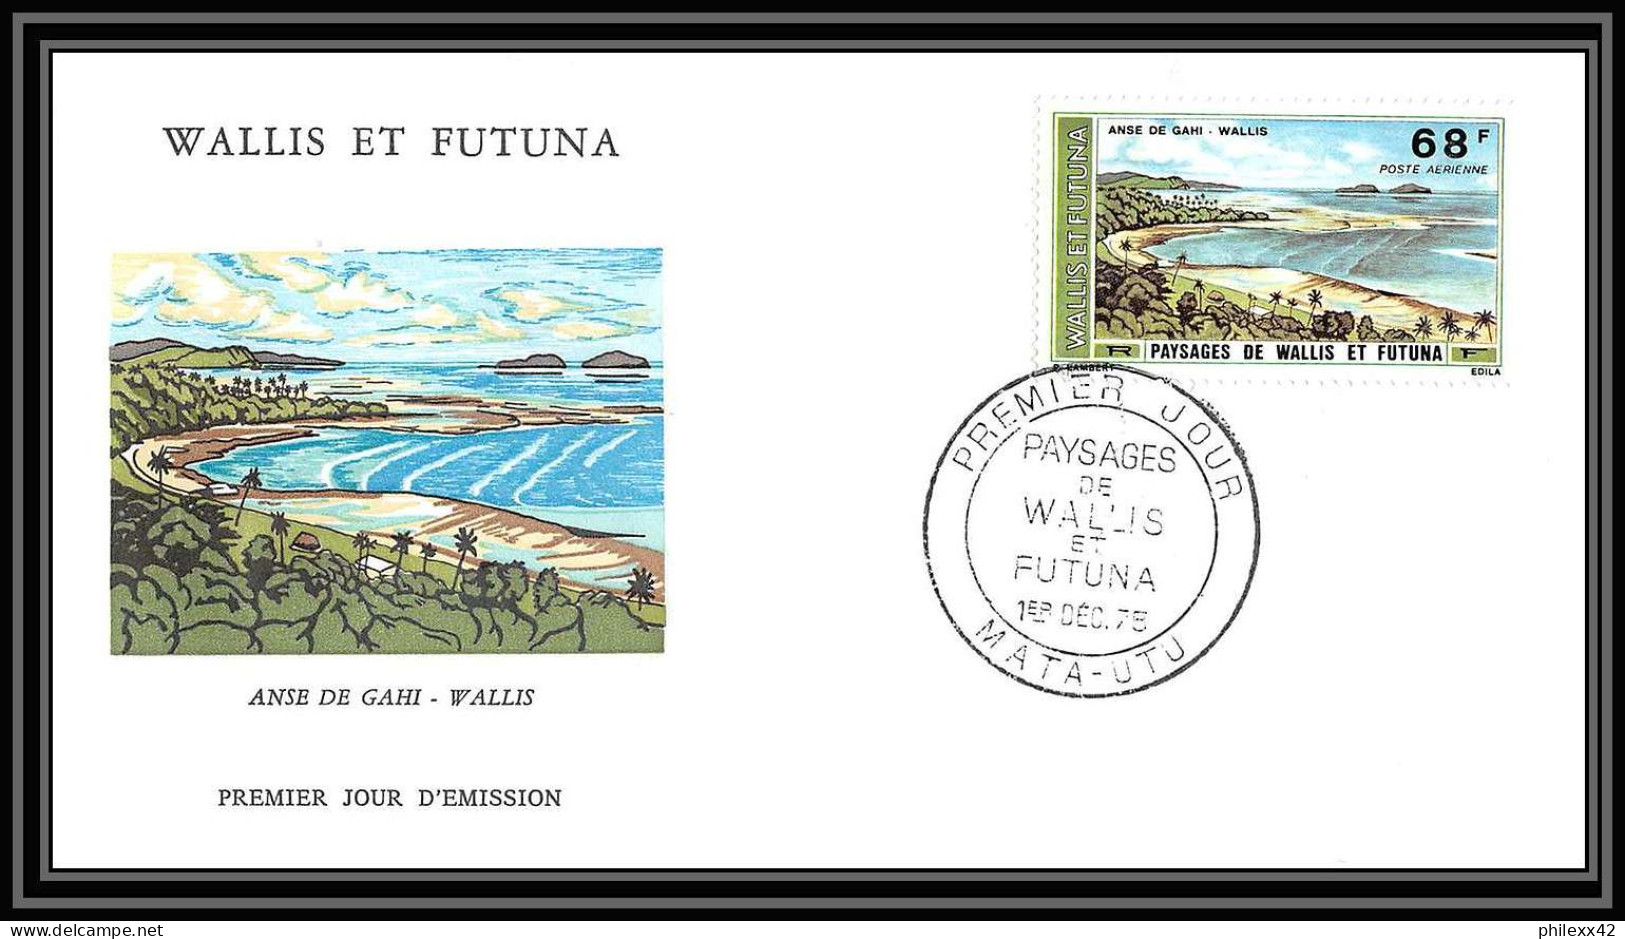 1492 épreuve de luxe / deluxe proof Wallis et Futuna PA N° 67/70 PA PAYSAGES + fdc premier jour